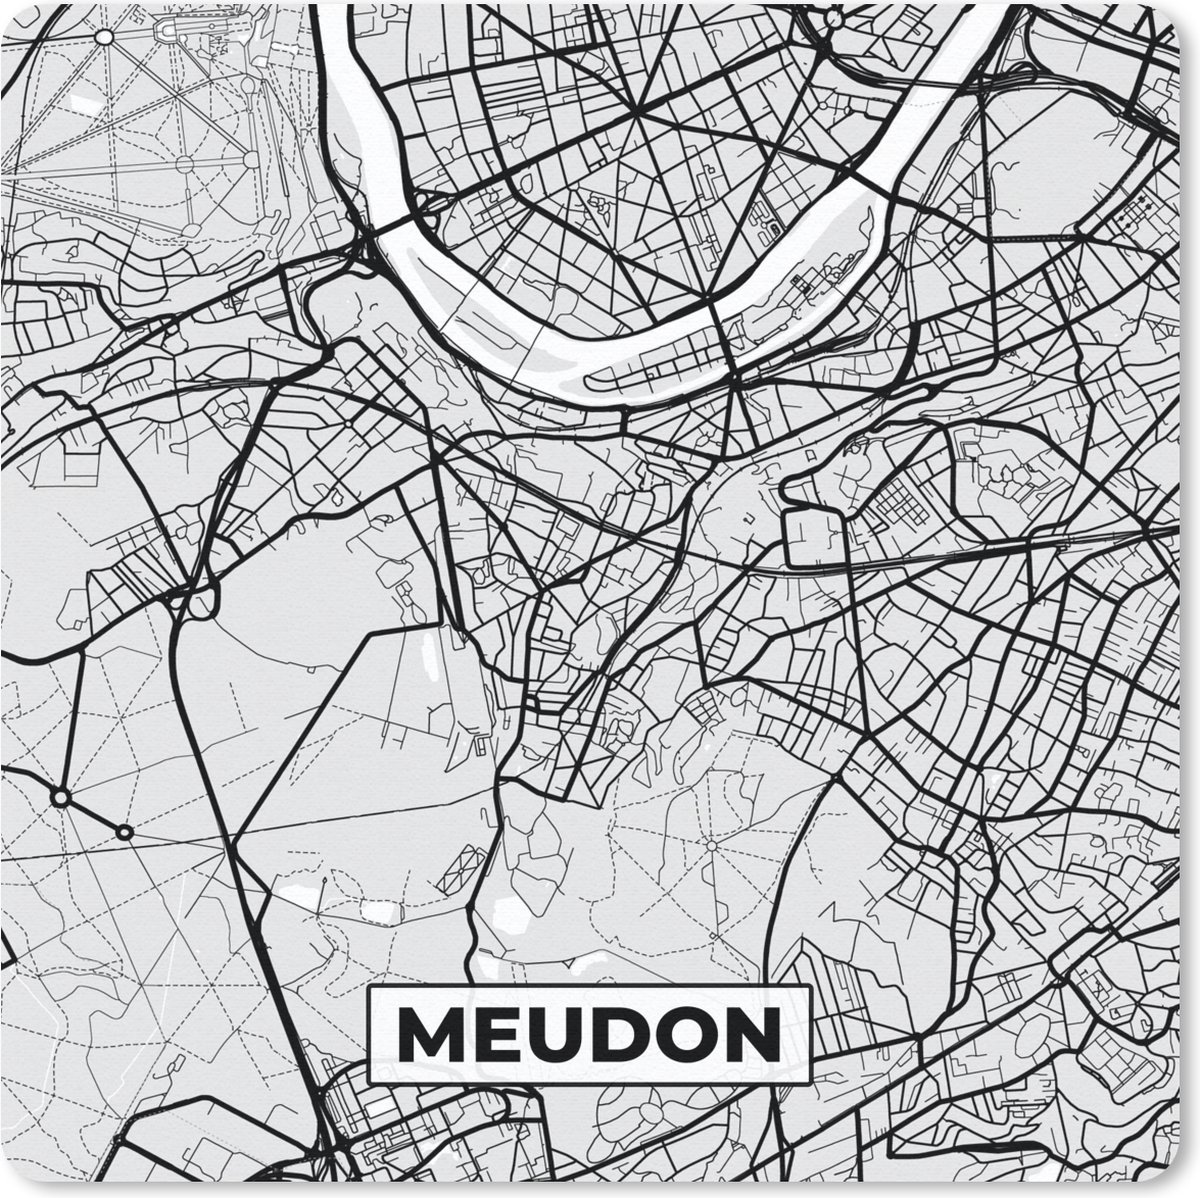 Muismat - Mousepad - Meudon - Plattegrond - Frankrijk - Kaart - Stadskaart - 30x30 cm - Muismatten